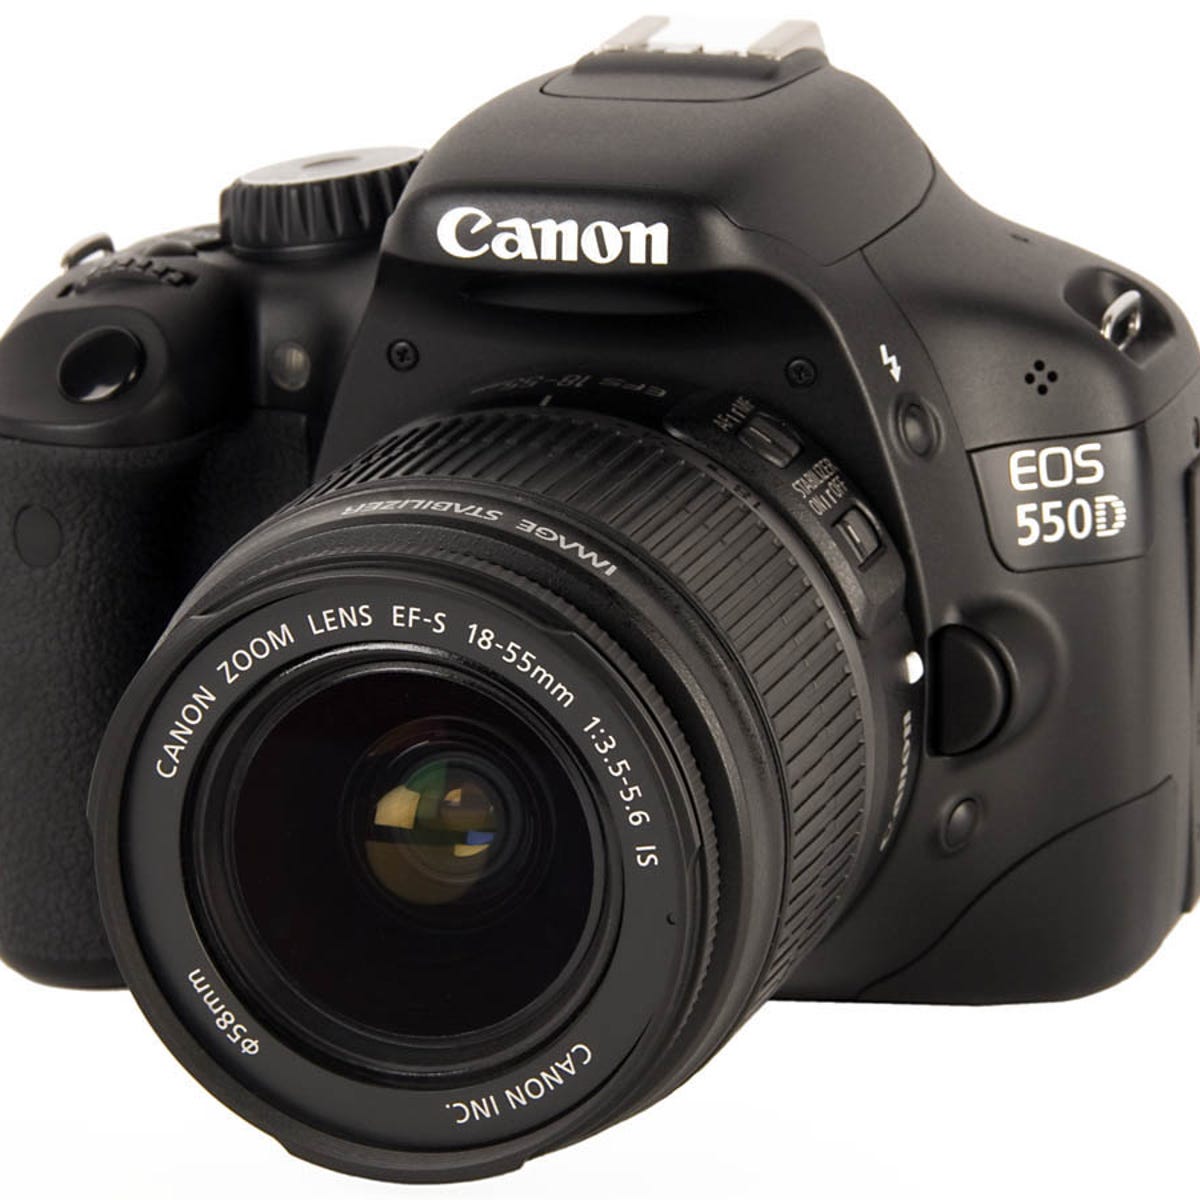 Hick De Componist Canon EOS 550D review: Canon EOS 550D - CNET